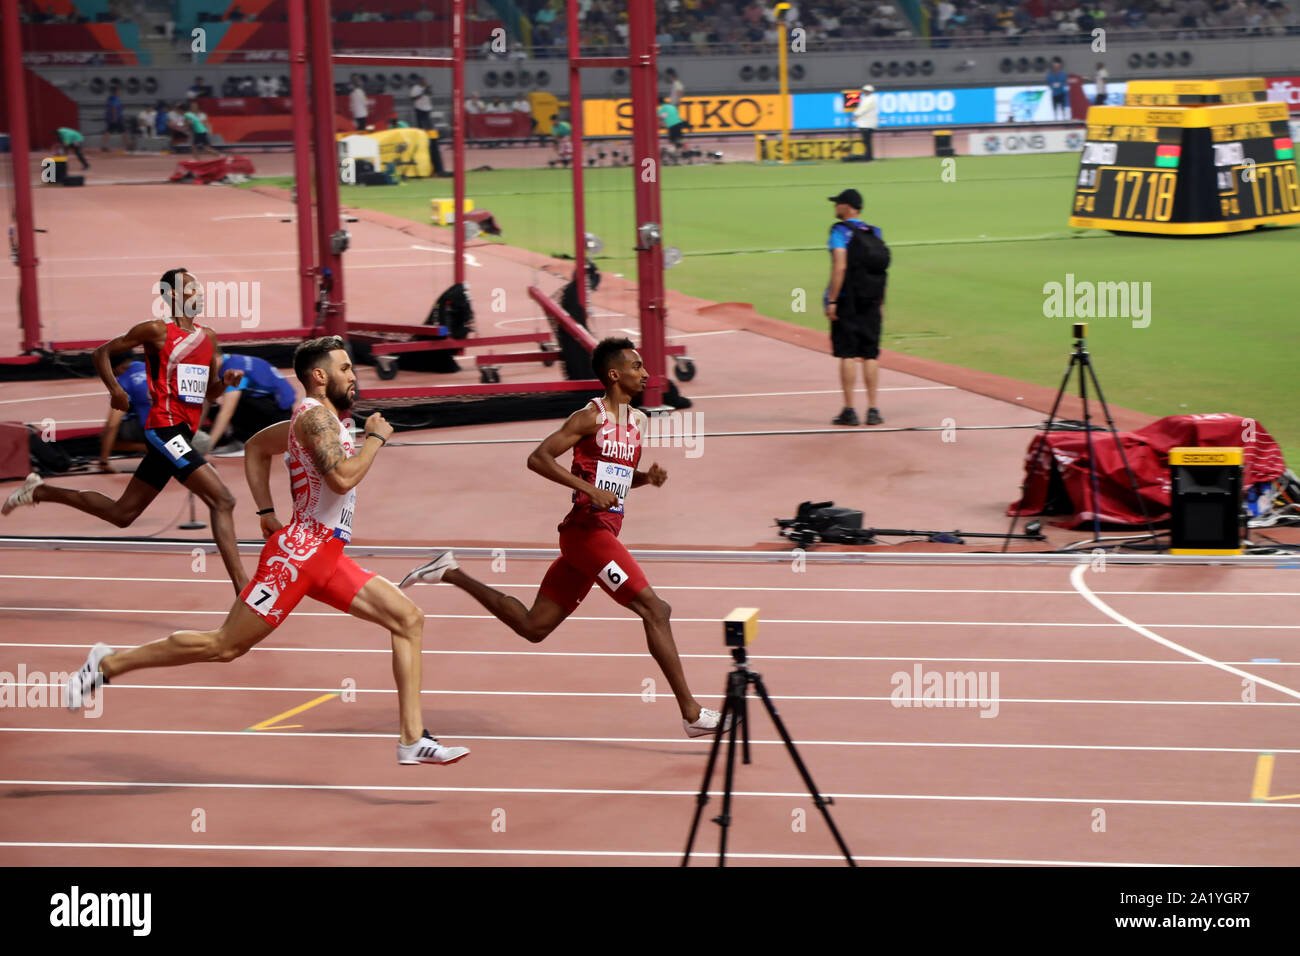 Doha / Qatar - Settembre 29, 2019: Qatar's Abdalla e Puerto Rico's Vazquez competere durante una semi finale per gli uomini di 800 metri come parte della IAAF mondiale di atletica 2019 Foto Stock